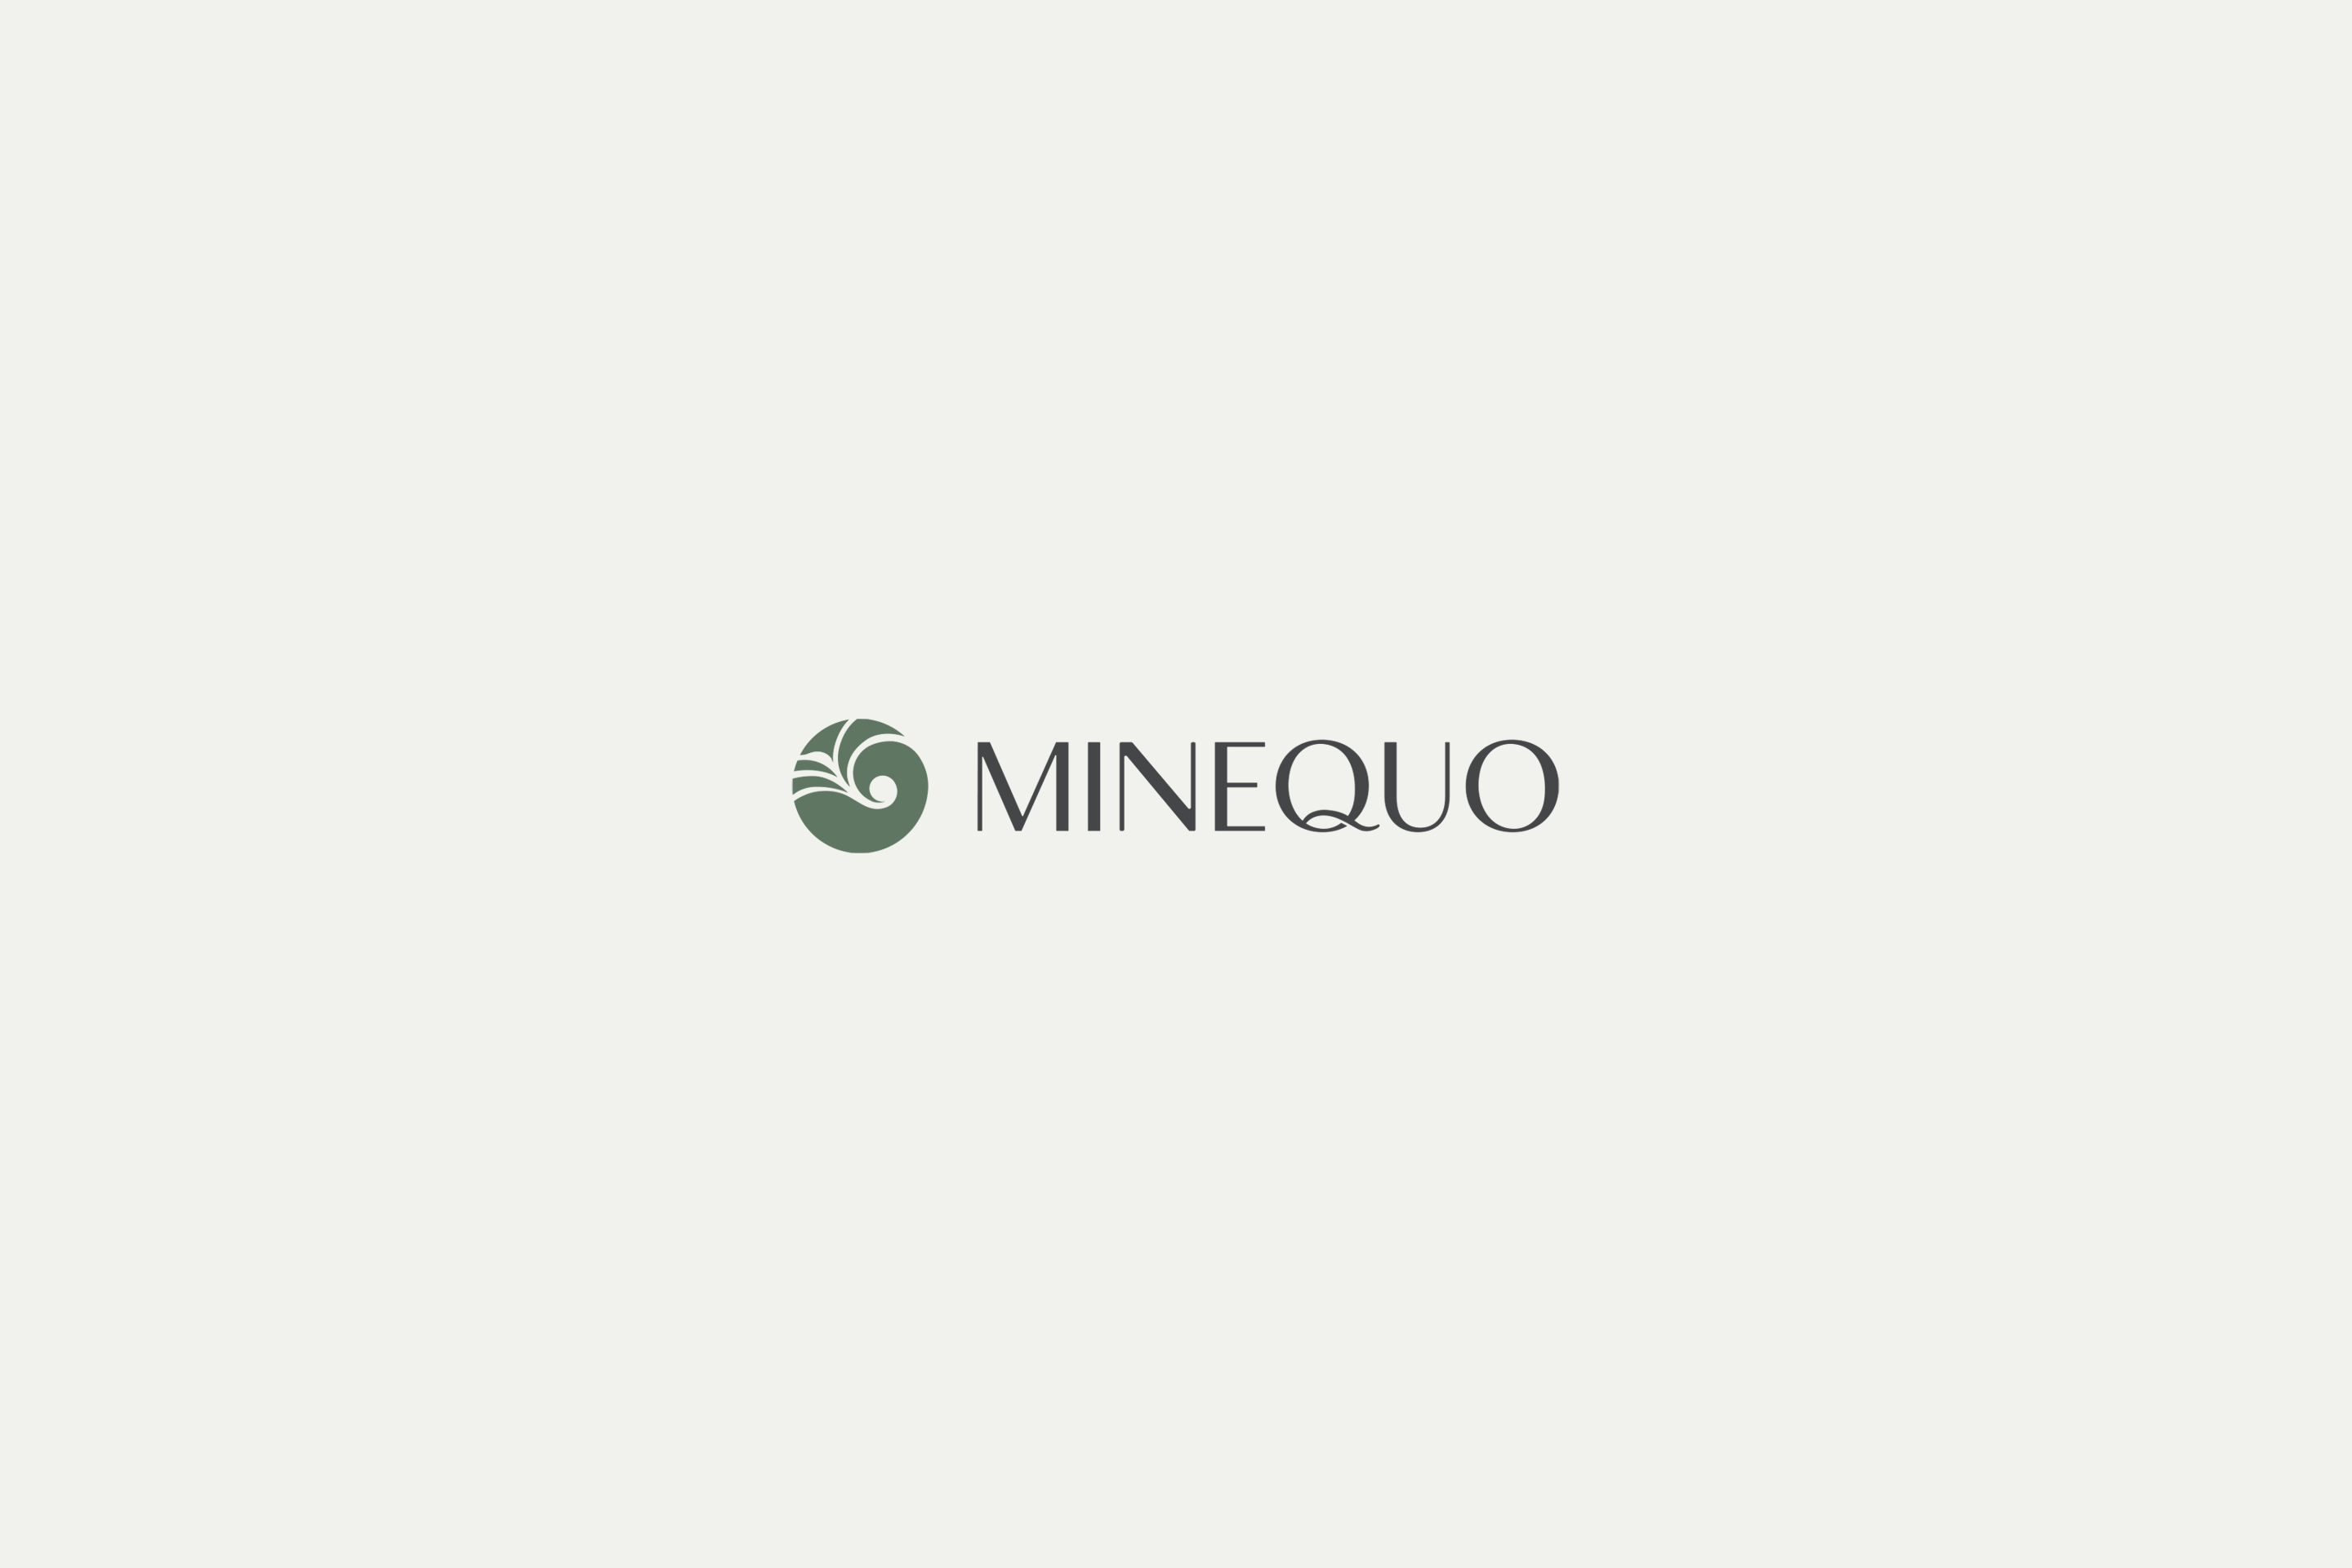 MINEQUO - Powered By Nature